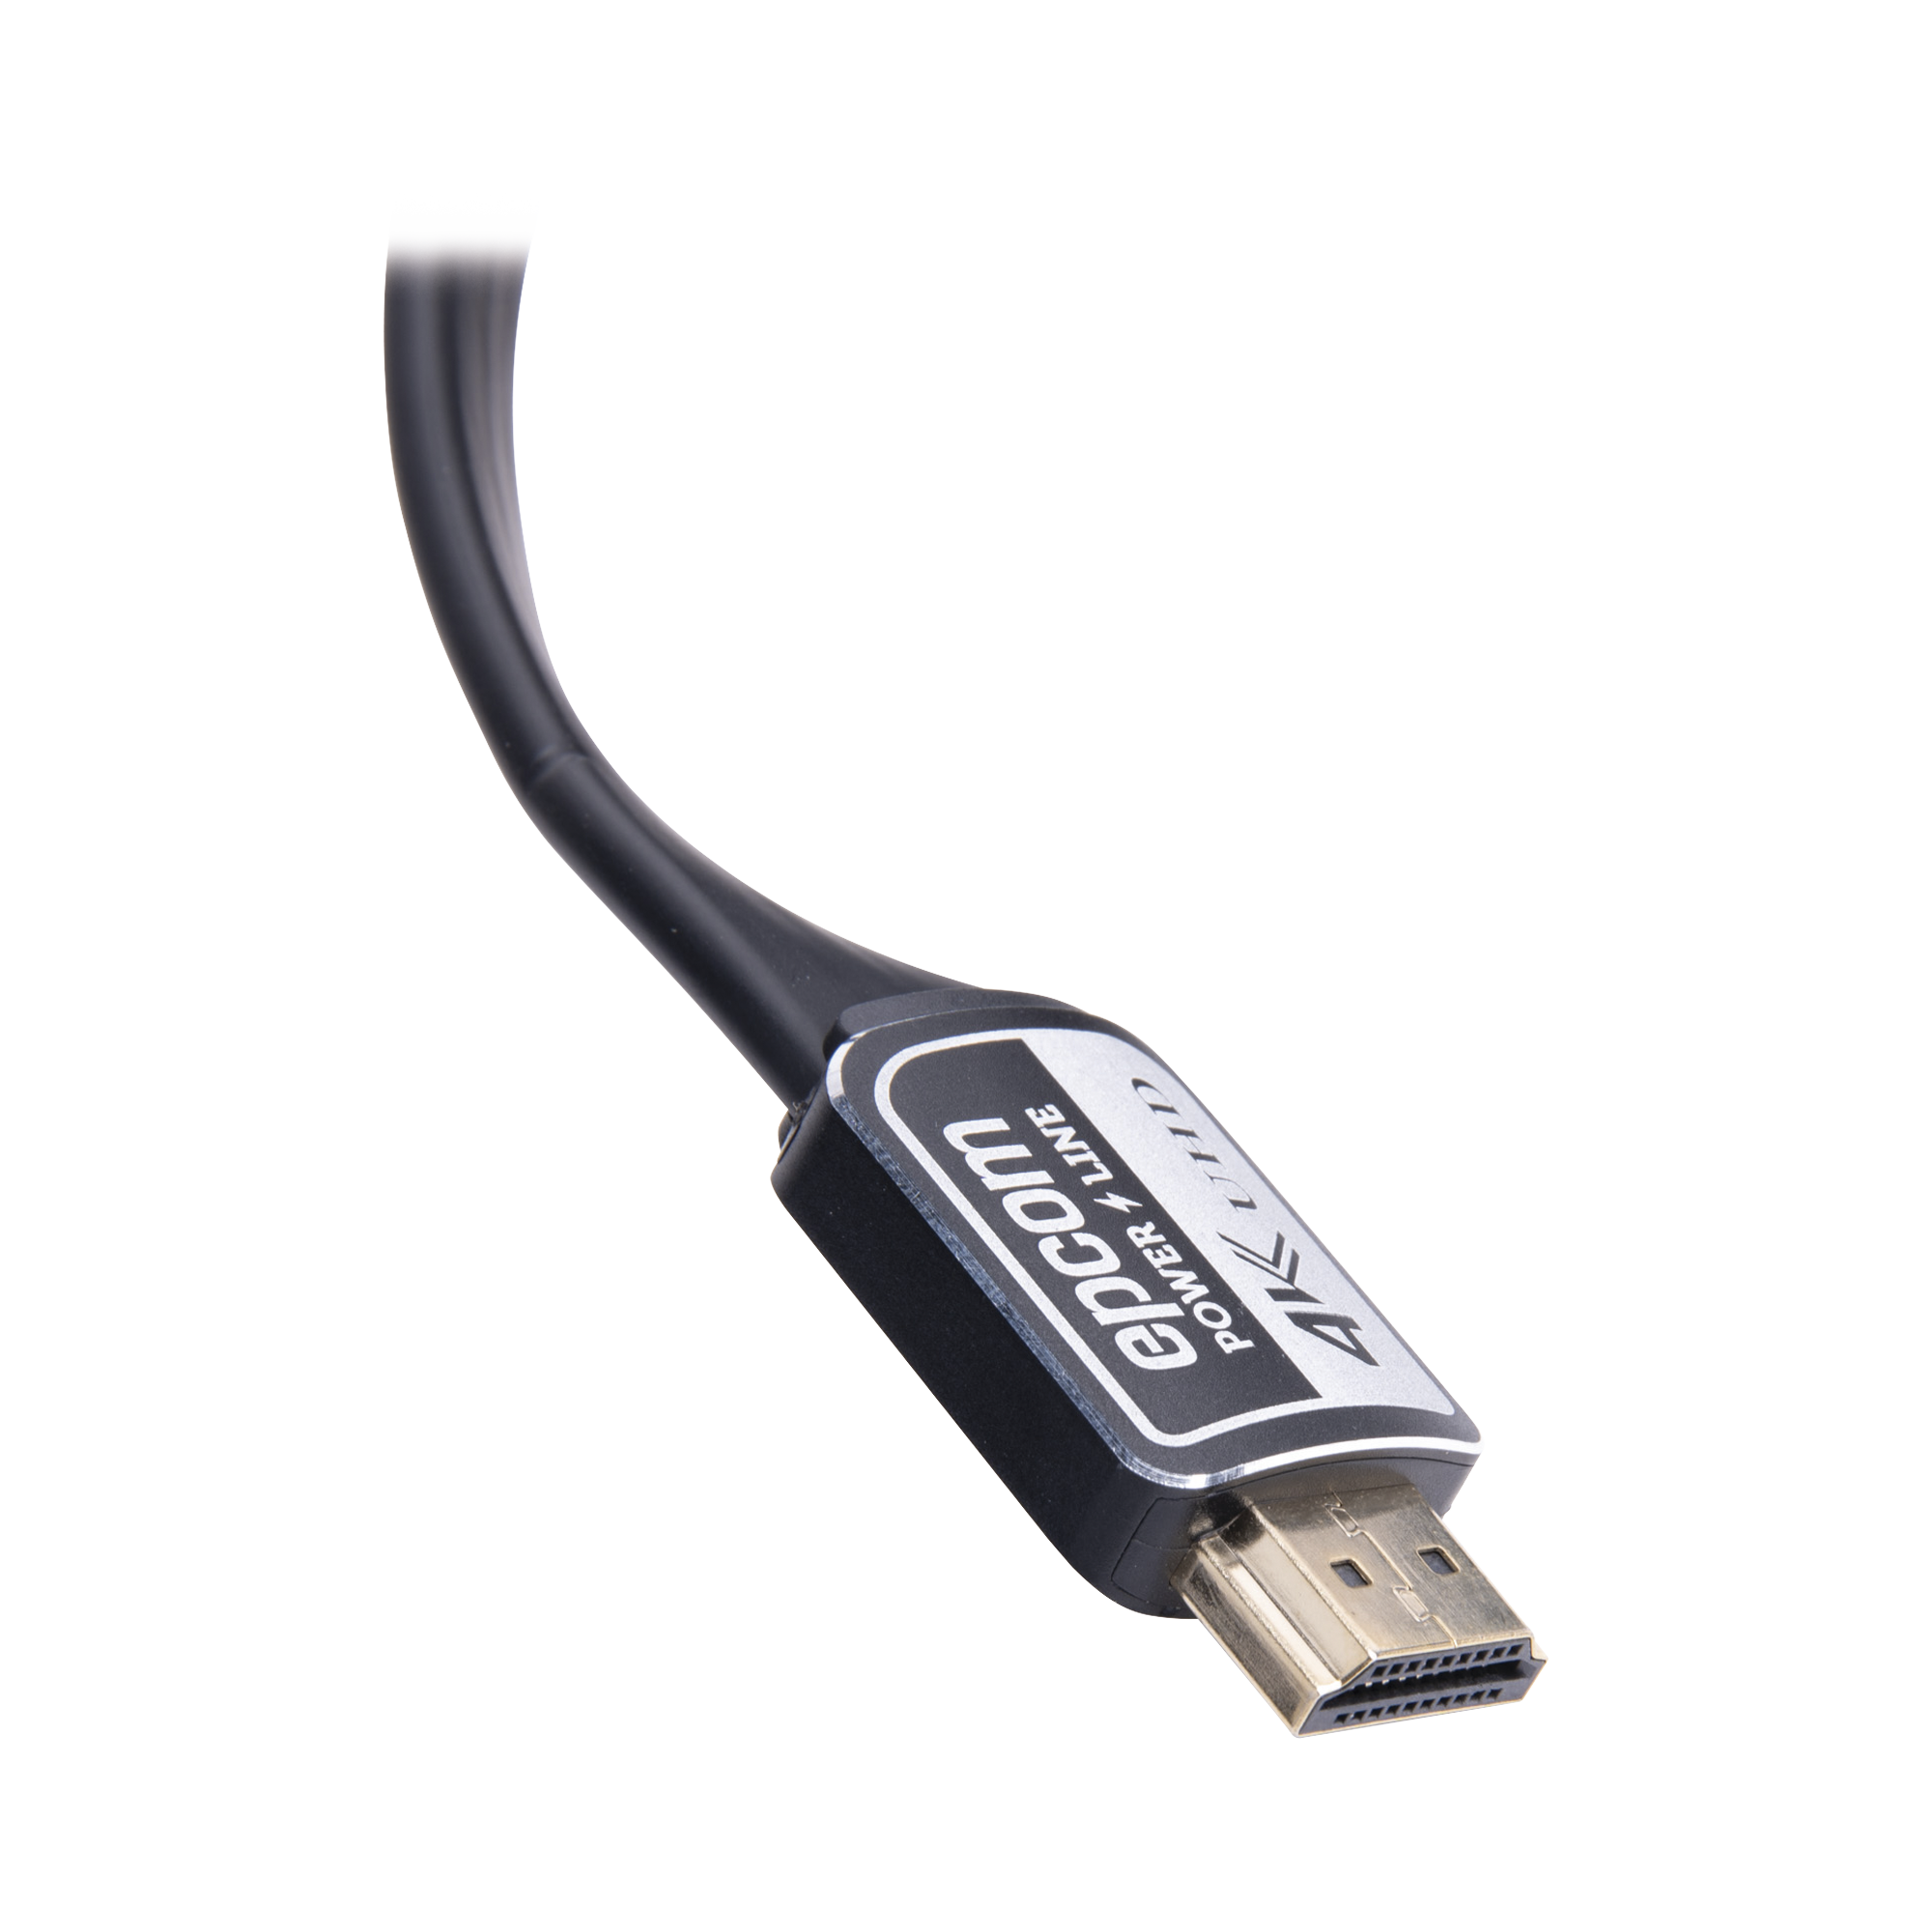 Cable HDMI versión 2.0 Plano de 10M (32.8 ft) optimizado para resolución 4K ULTRA HD